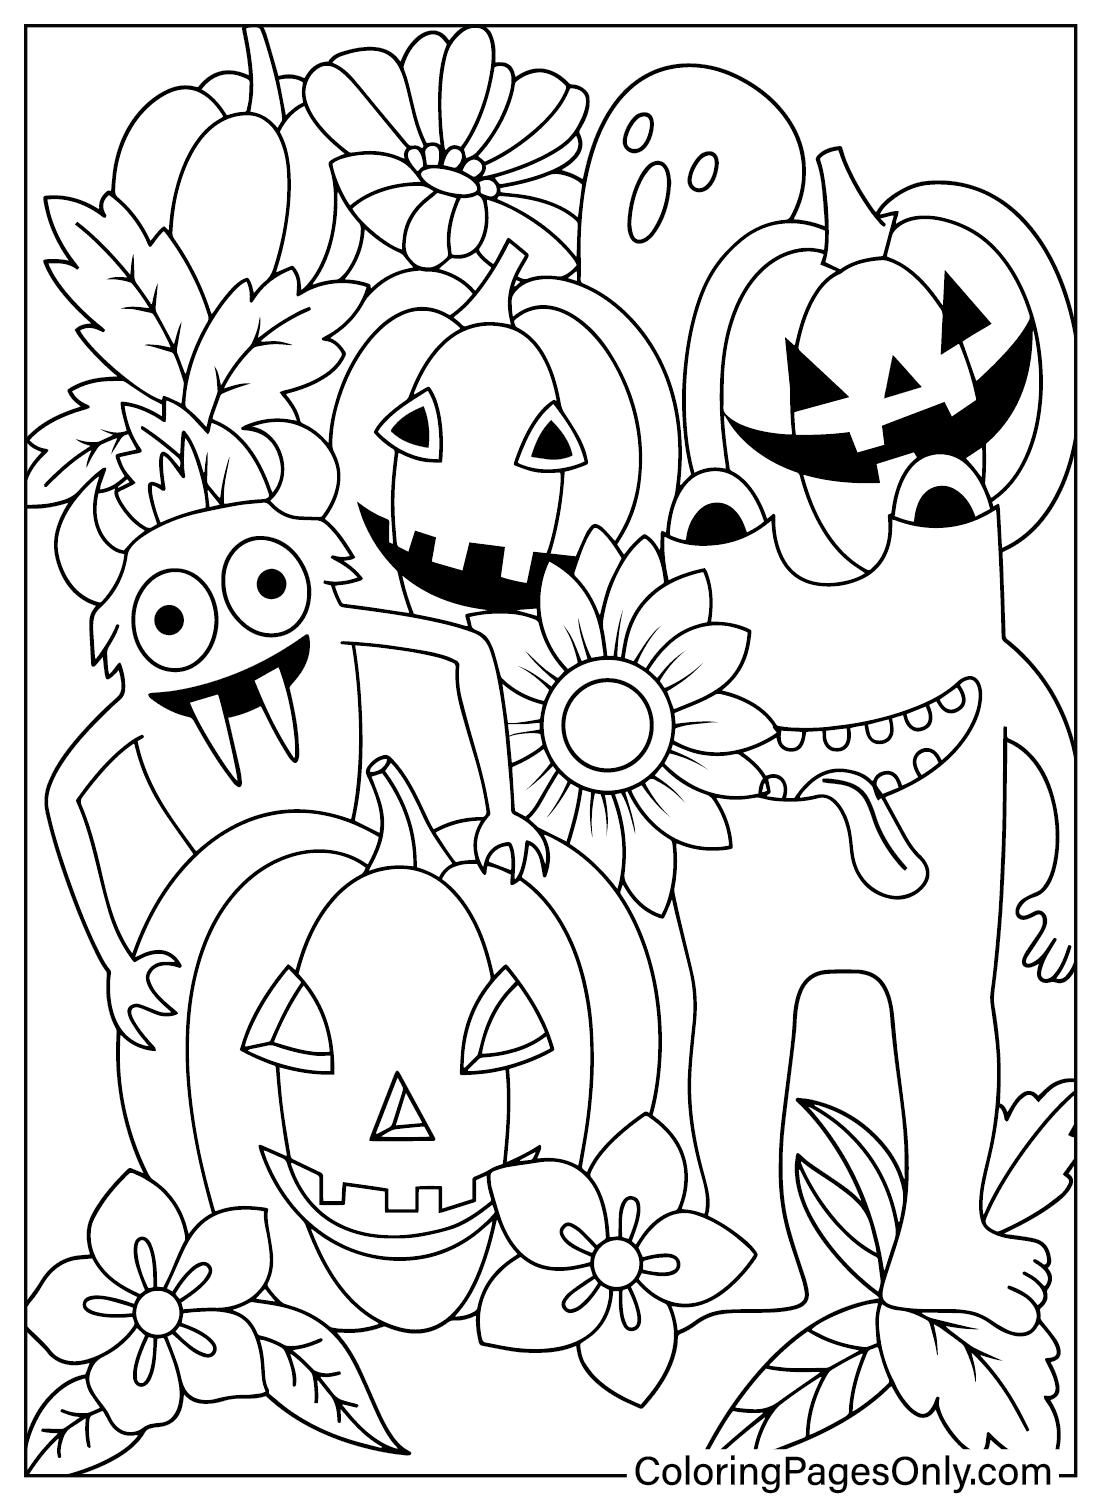 Раскраска Spooktacular Halloween из Spooktacular Halloween